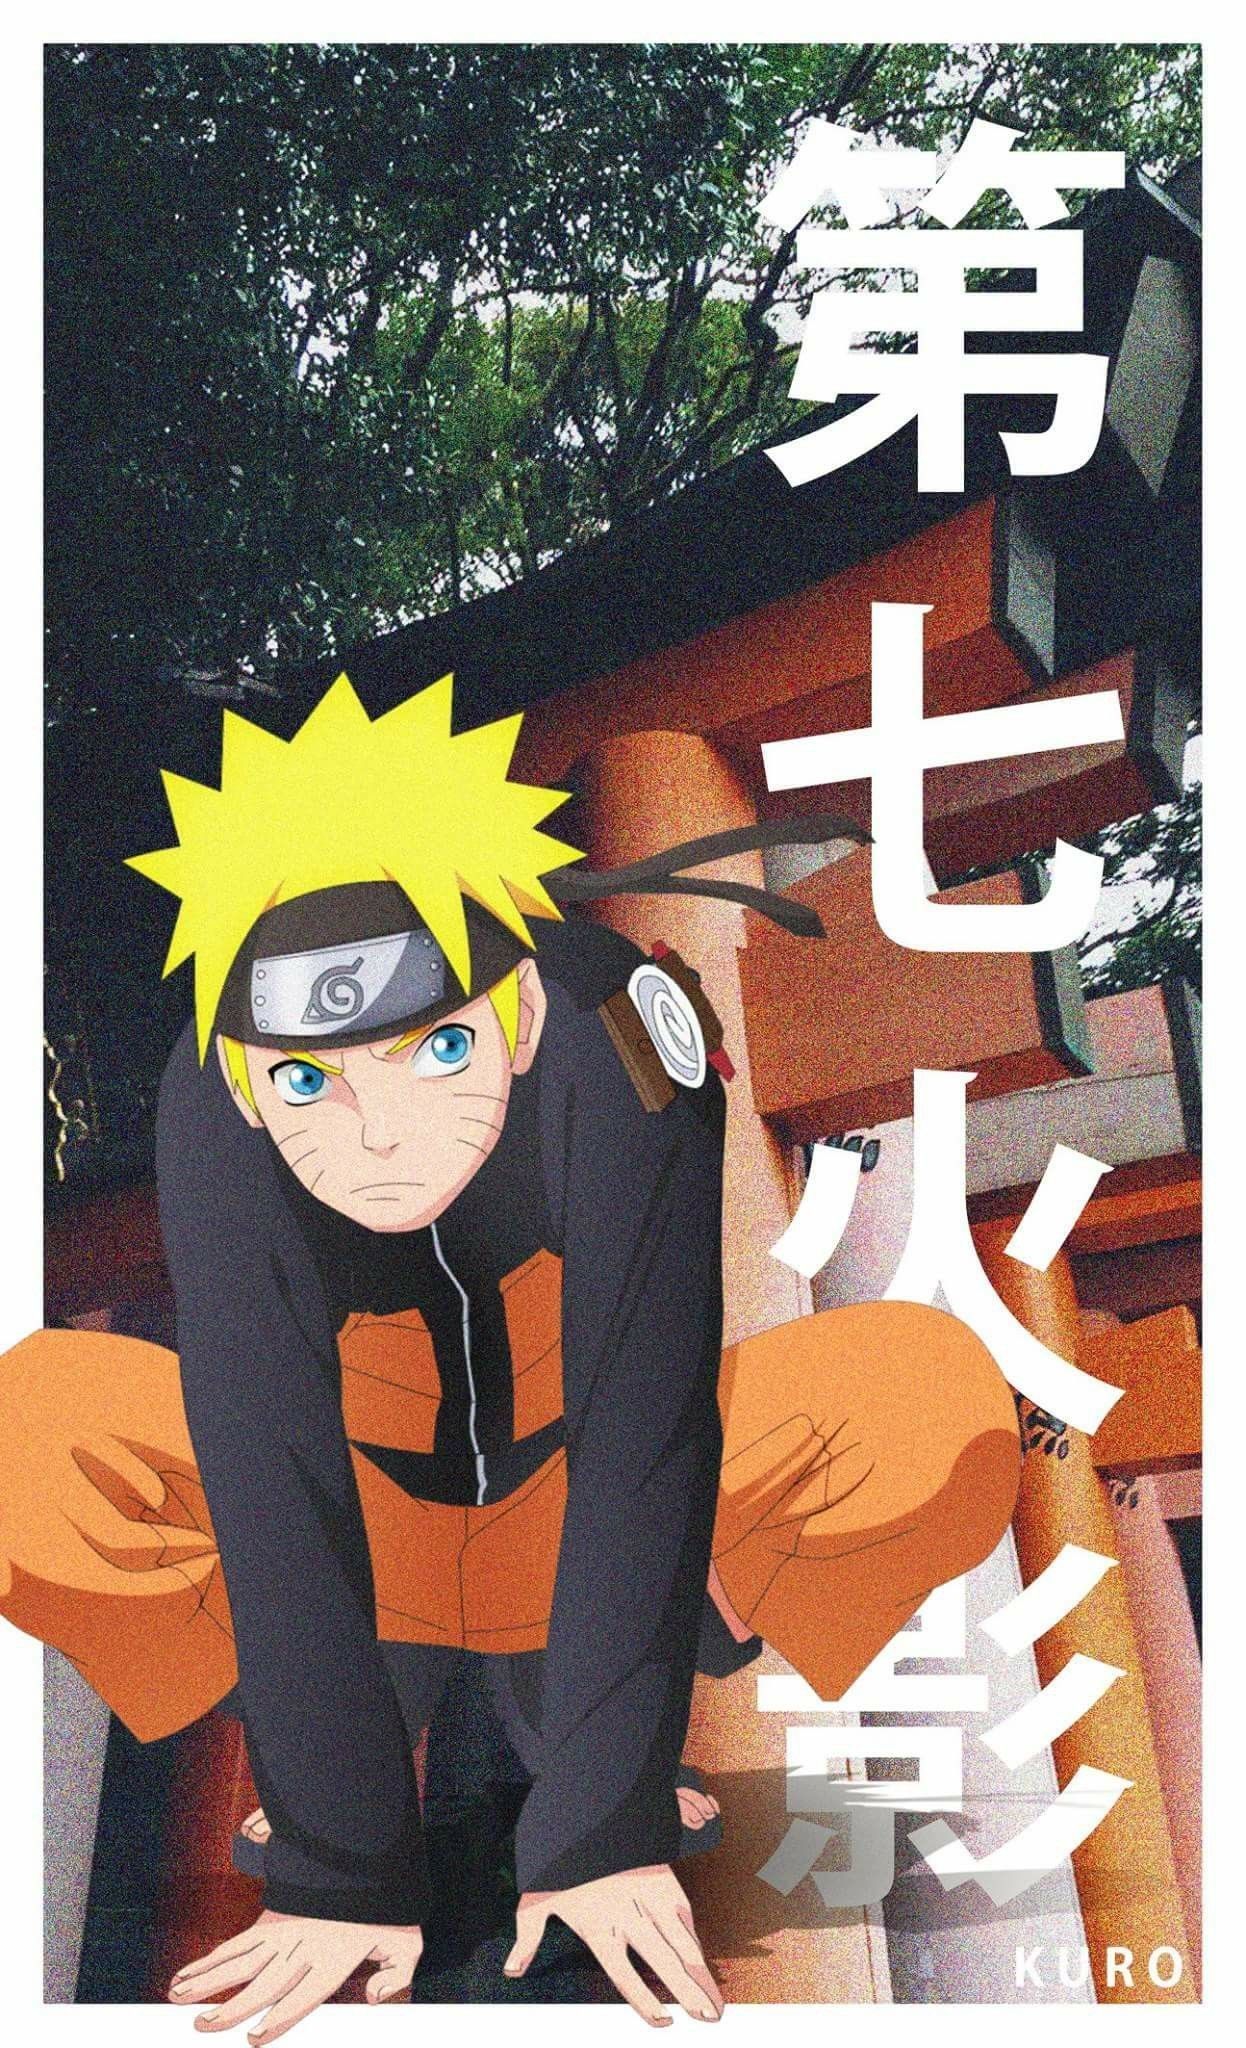 List of Nice Anime Wallpaper IPhone 7 Plus Hokage Naruto Wallpaper Mobile Naruto and minato. Anime wallpaper iphone, Naruto wallpaper, Anime wallpaper